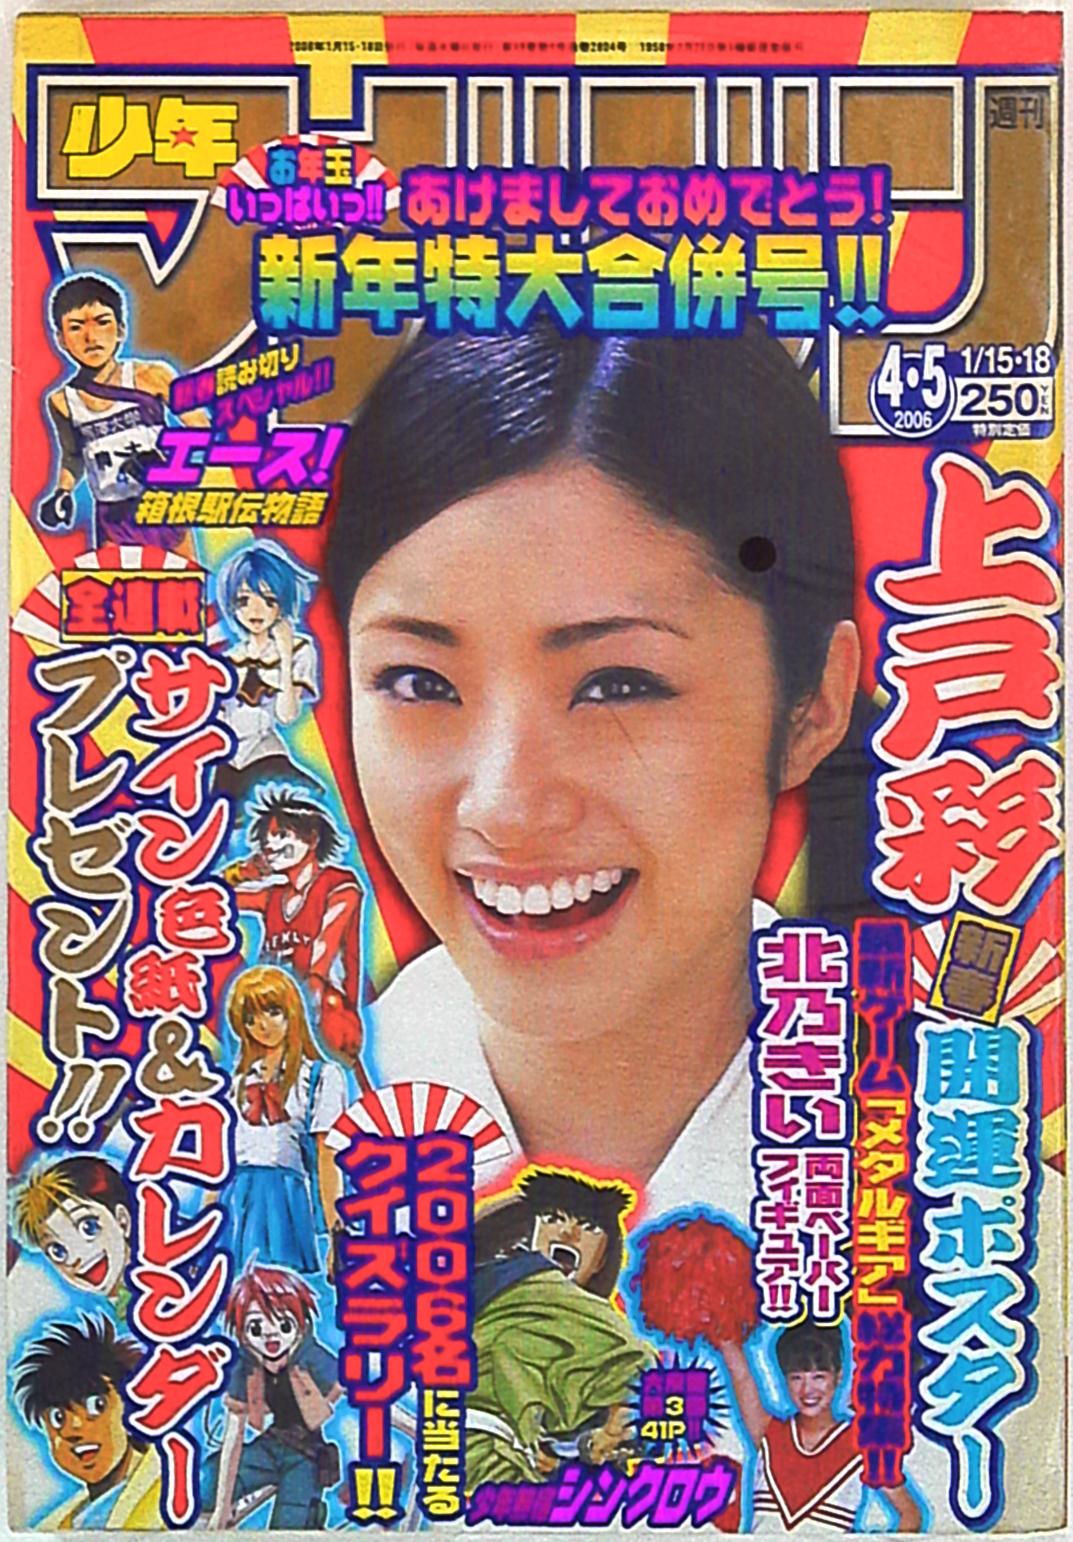 上戸彩さんの直筆サイン入りのカレンダーとポスターのセット - アイドル